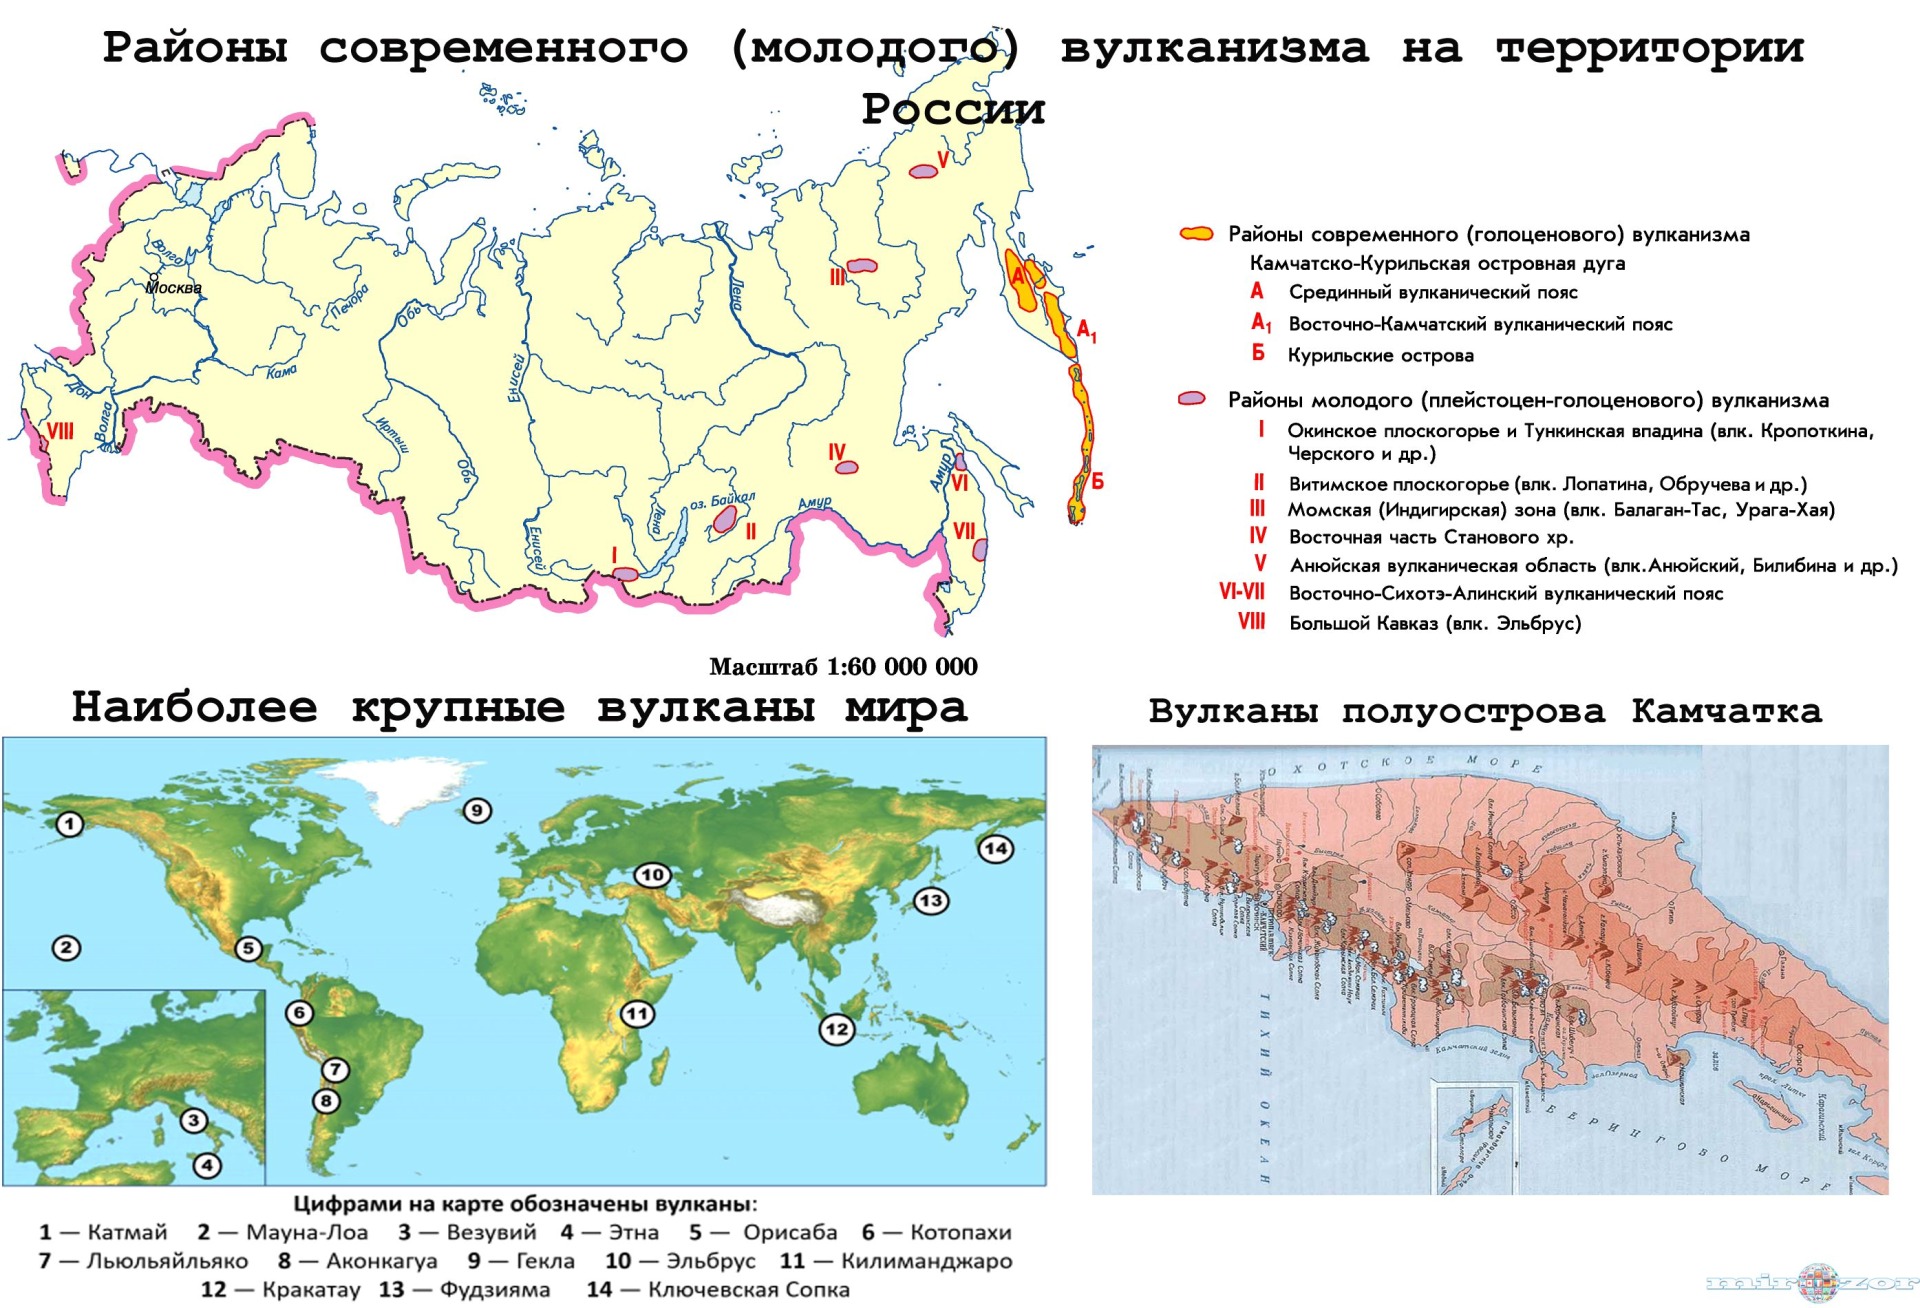 Районы современного вулканизма на территории РФ на карте